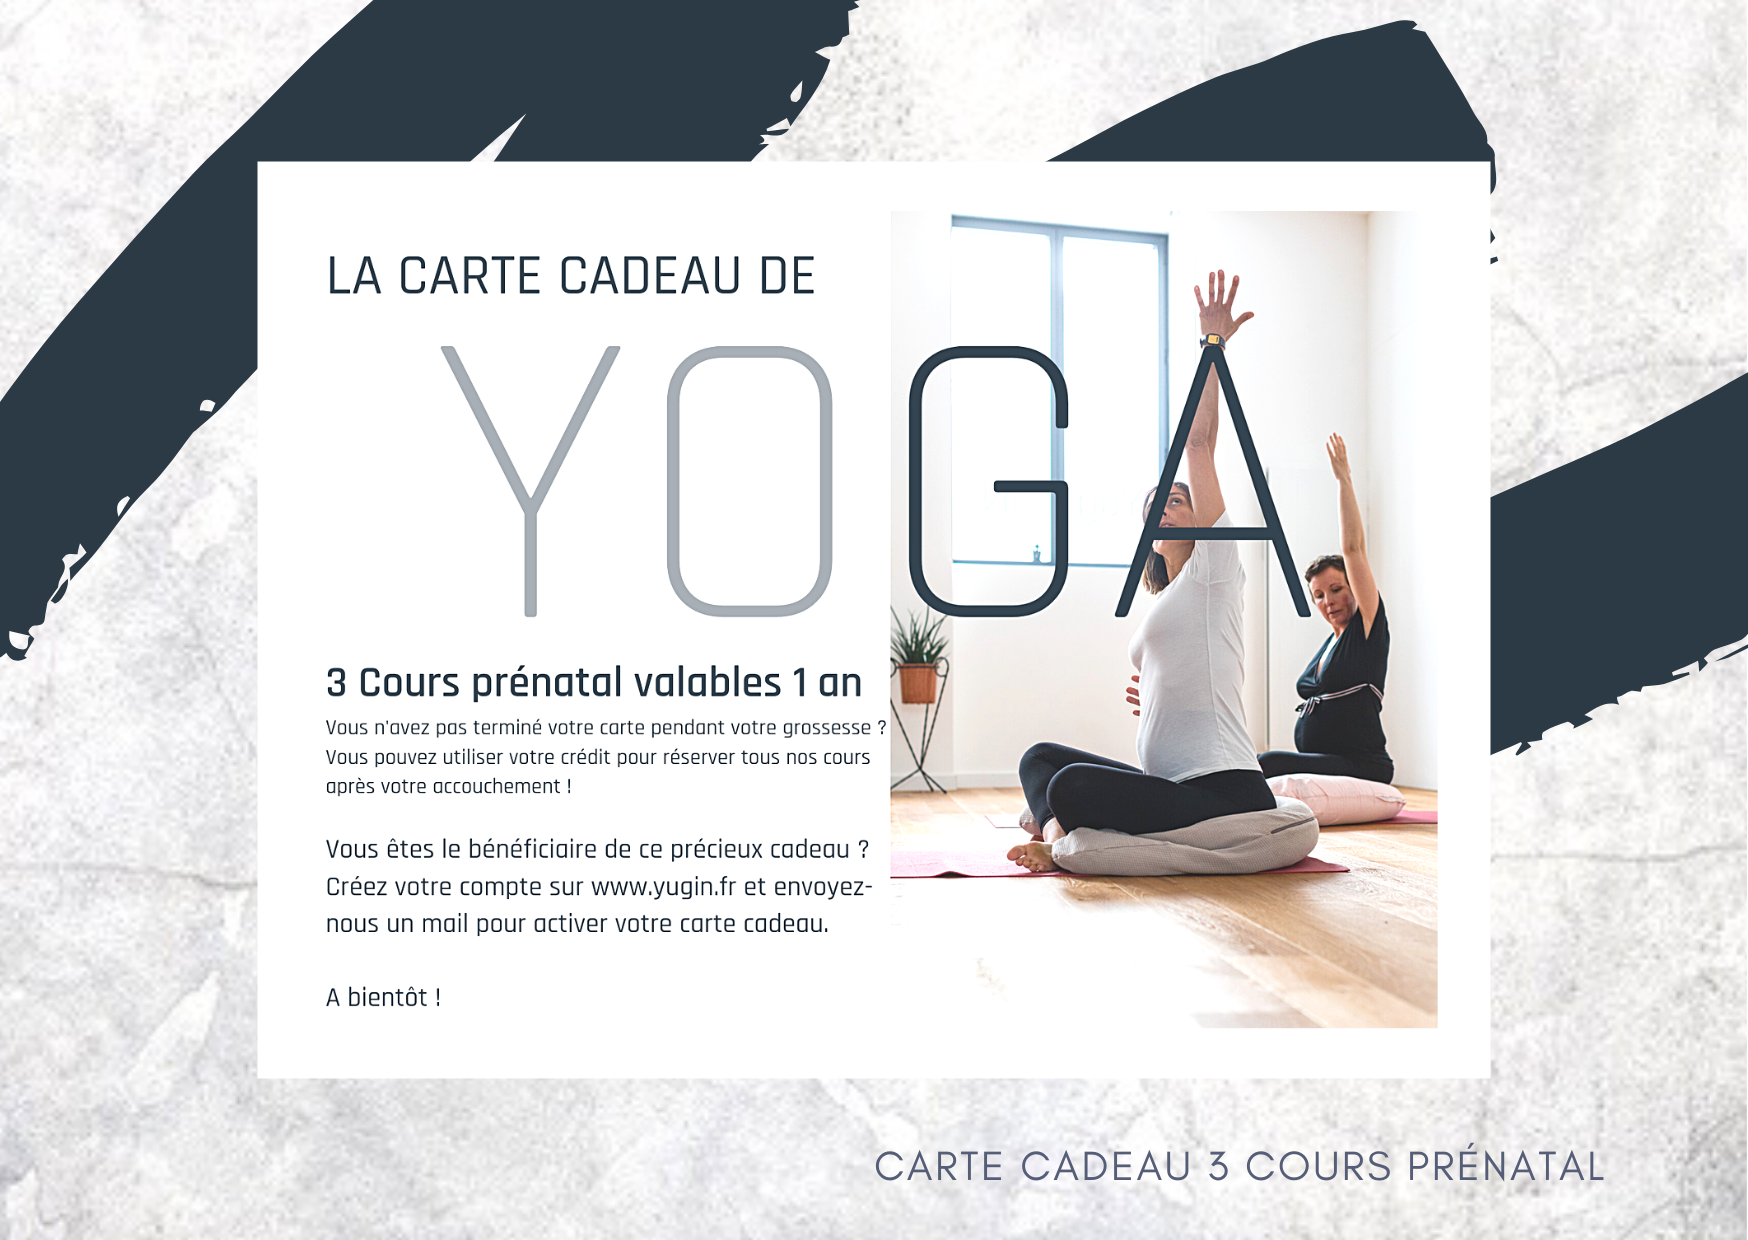 Carte cadeau yoga prénatal - 3 cours